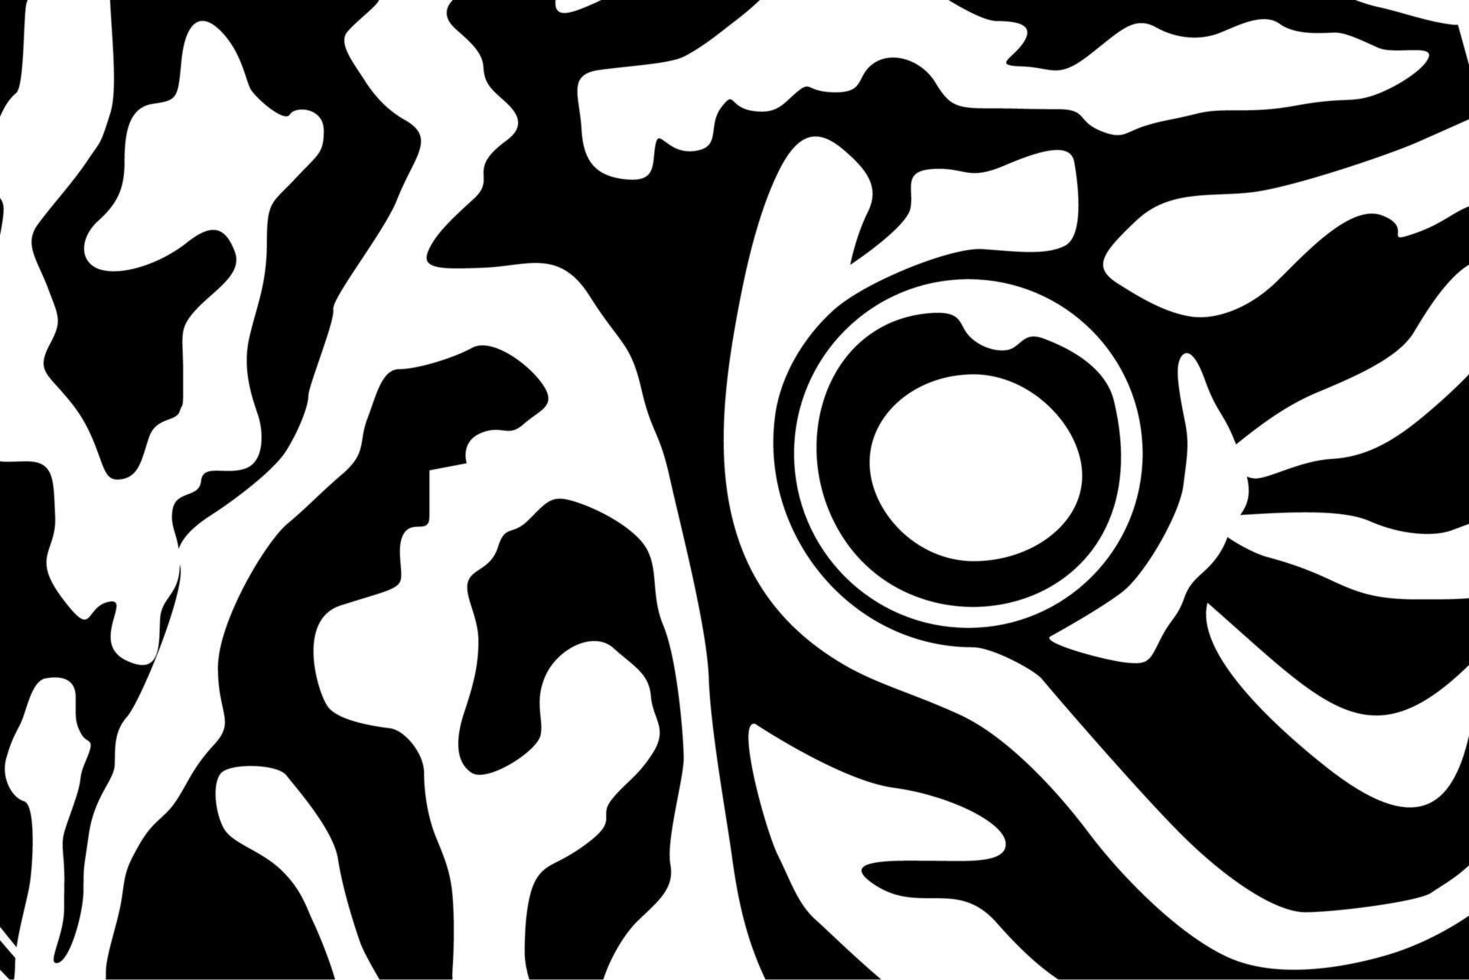 künstlerisch Motive Muster inspiriert durch symphysodon oder Diskus Fisch Haut, zum Dekoration, aufwendig, Hintergrund, Webseite, Hintergrund, Mode, Innere, Abdeckung, Tier drucken, oder Grafik Design Element vektor